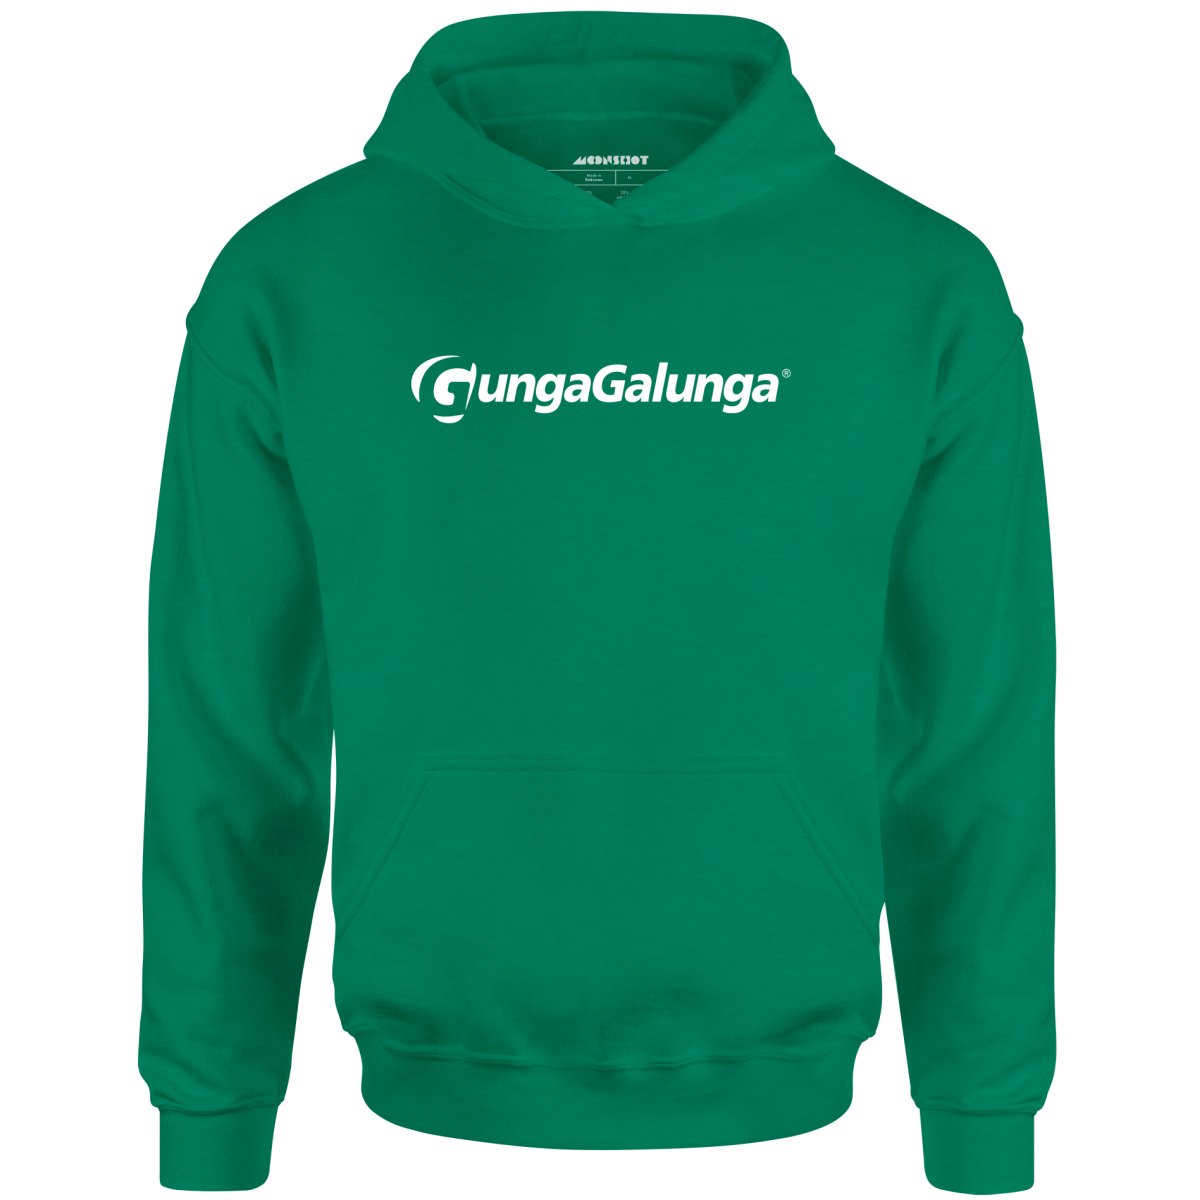 Gunga Galunga - Unisex Hoodie